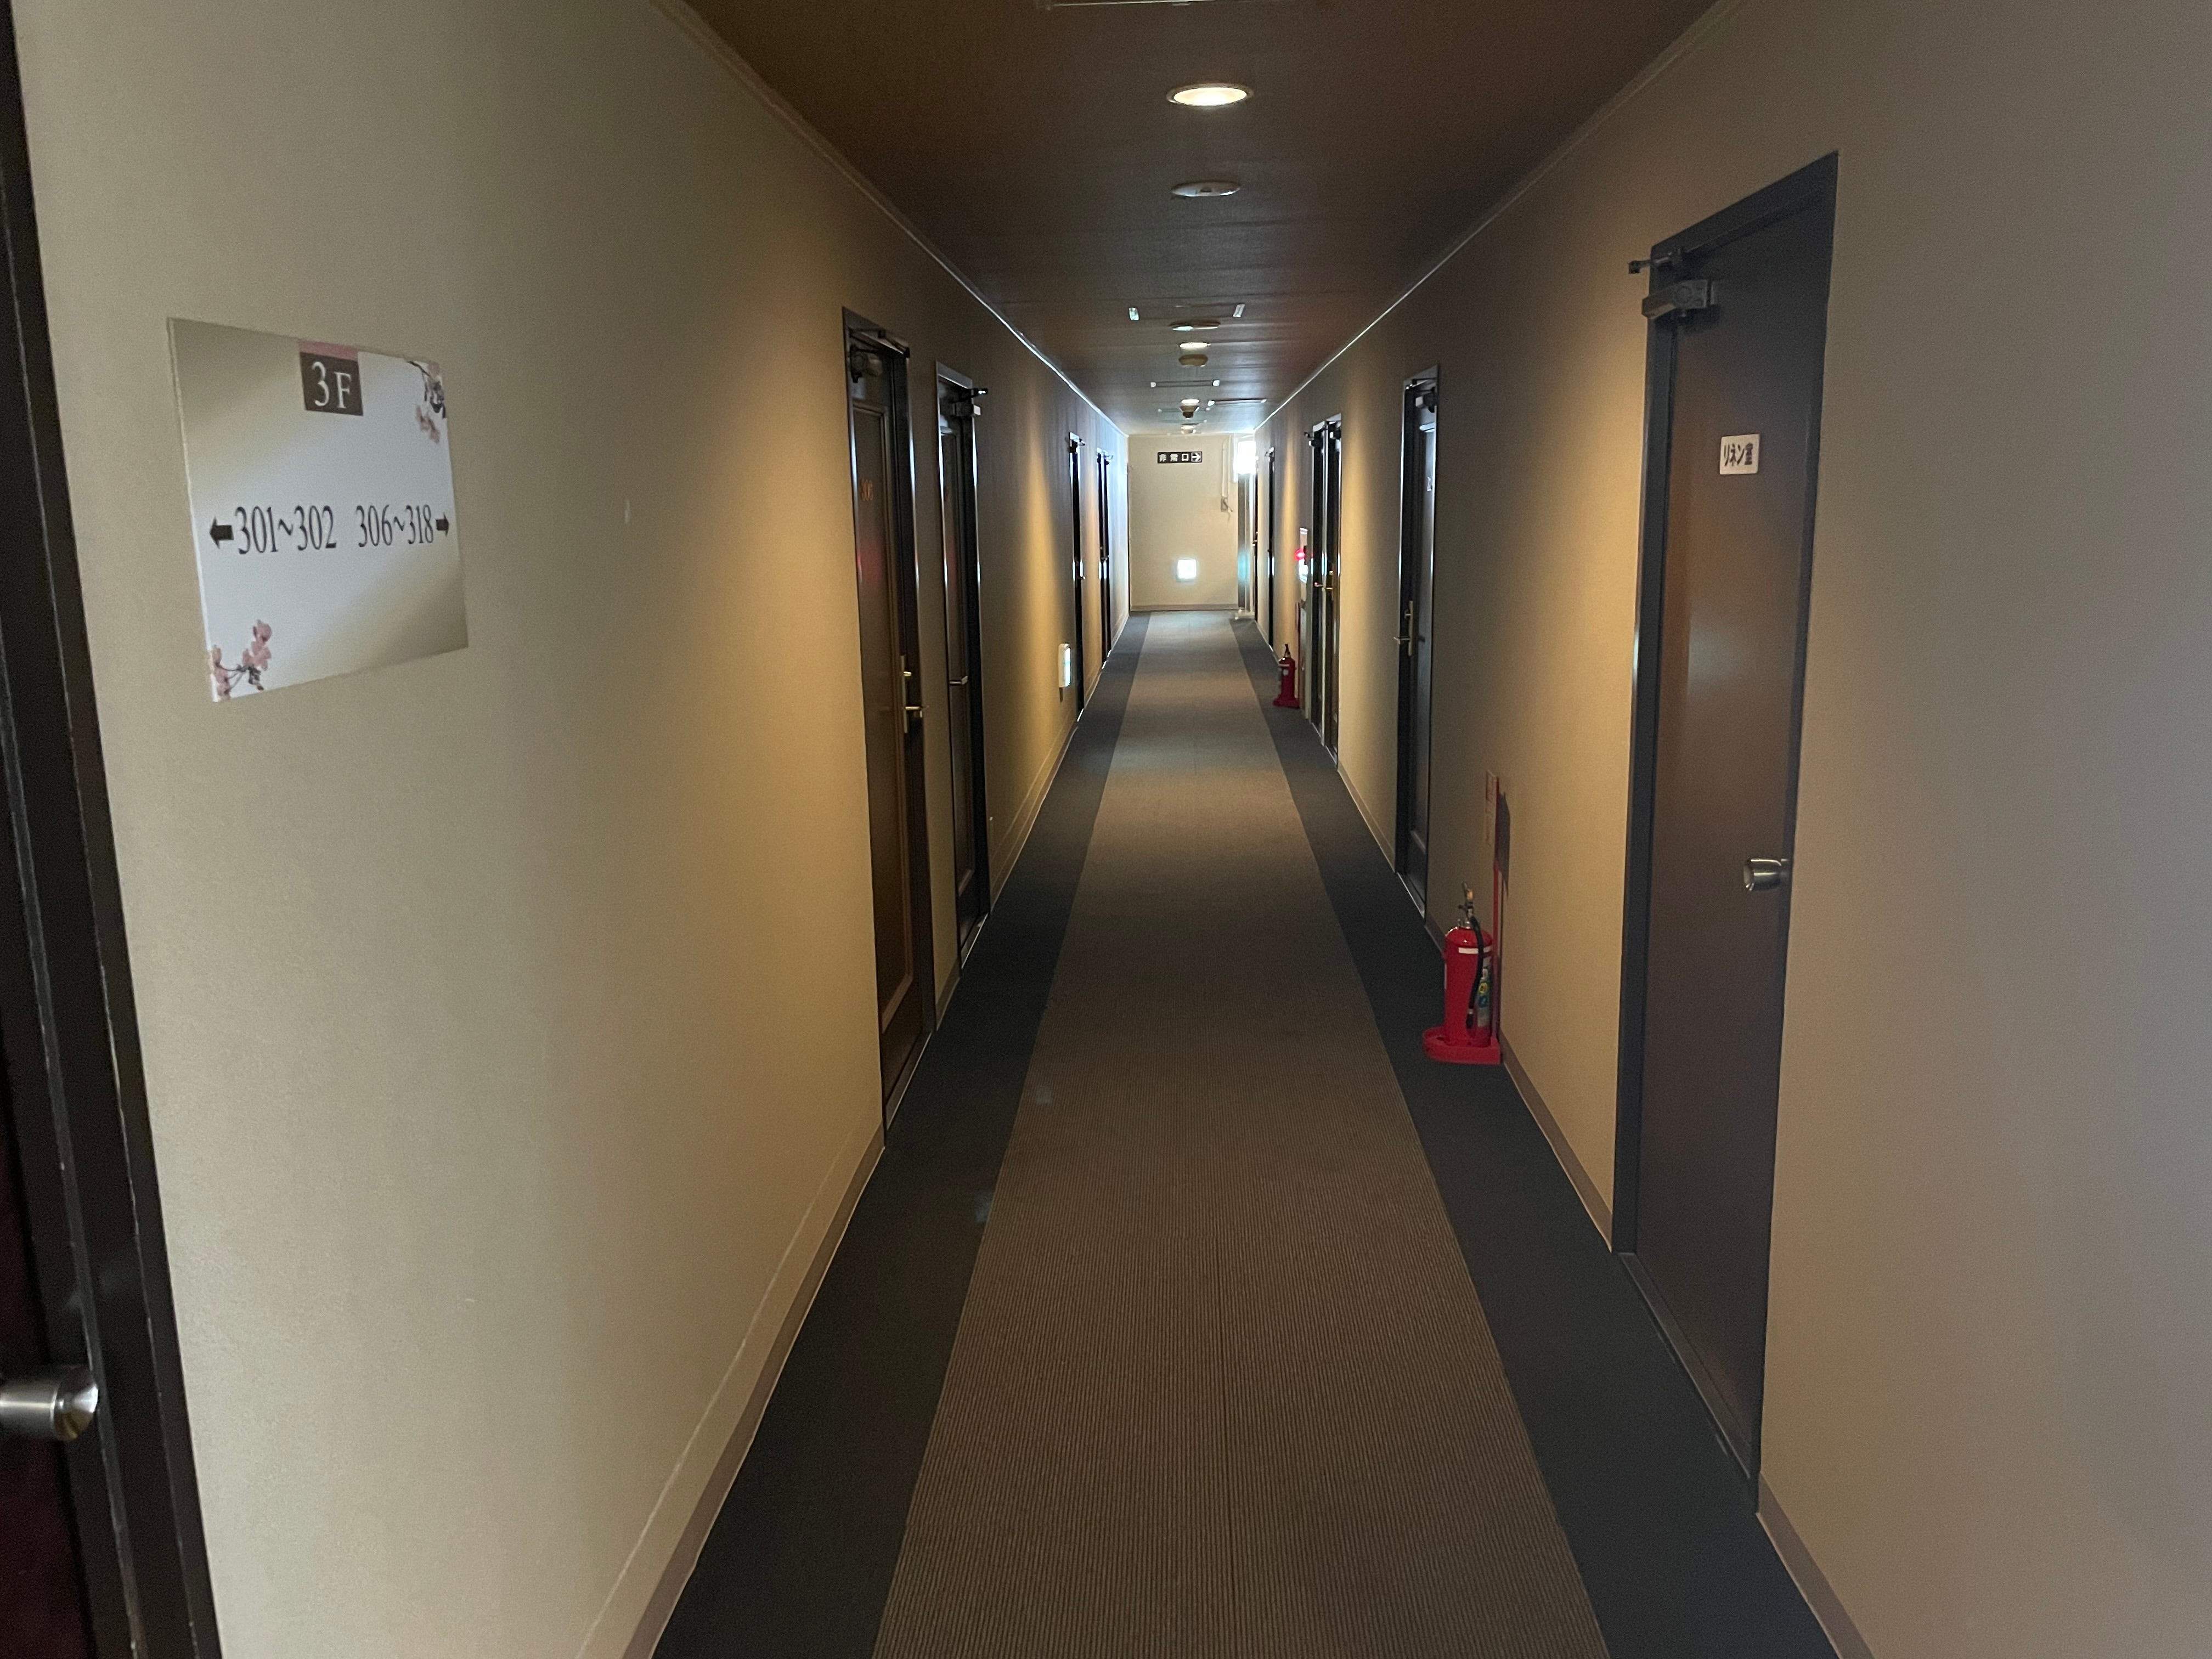 New corridor